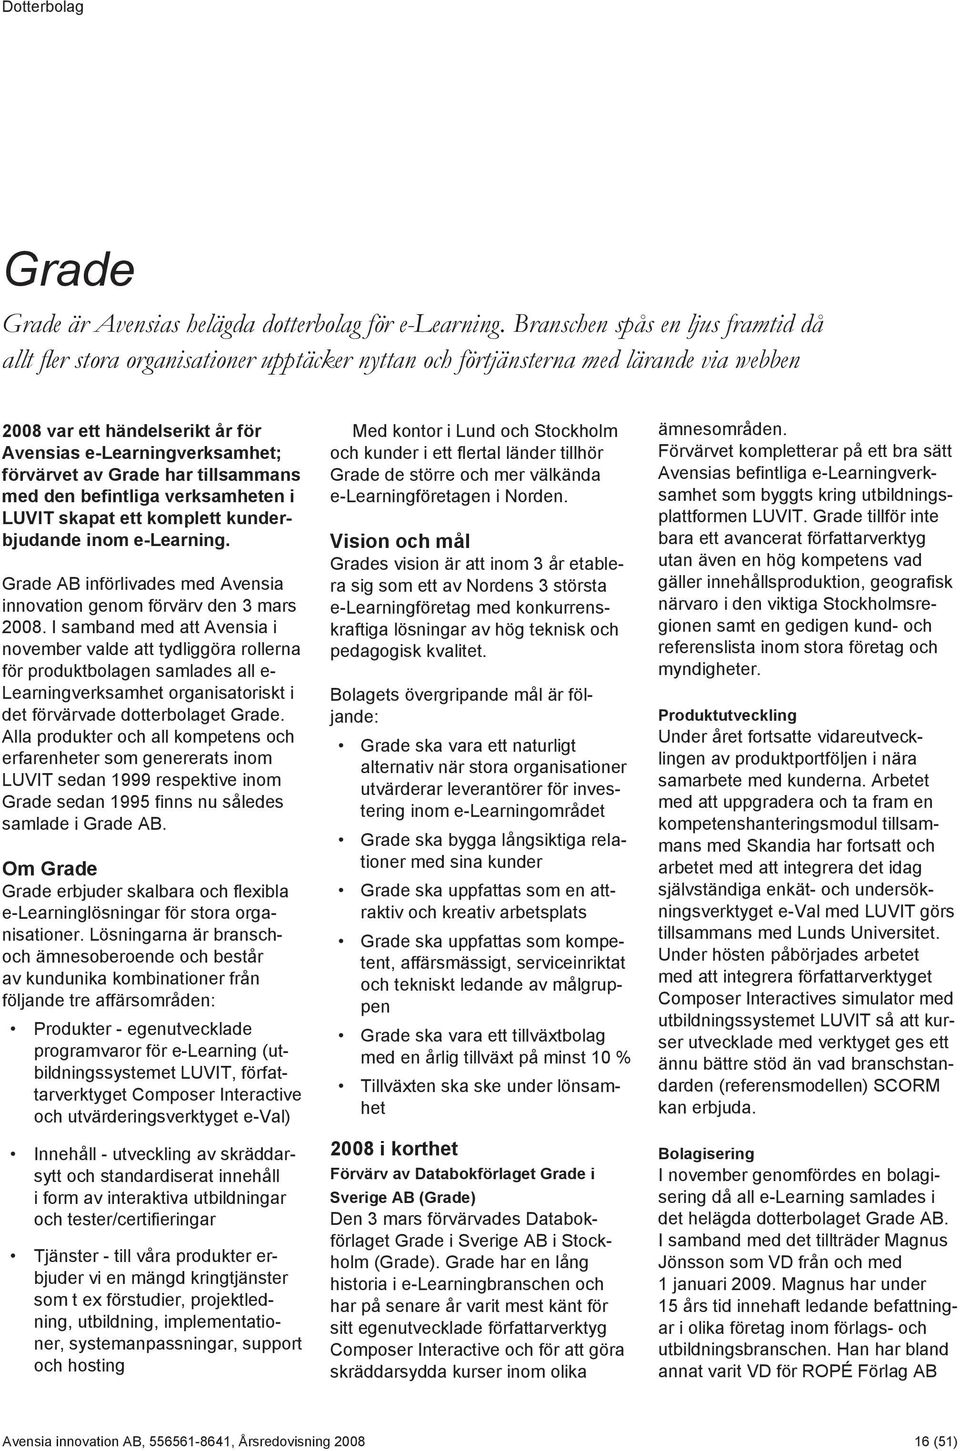 Grade har tillsammans med den befintliga verksamheten i LUVIT skapat ett komplett kunderbjudande inom e-learning. Grade AB införlivades med Avensia innovation genom förvärv den 3 mars 2008.